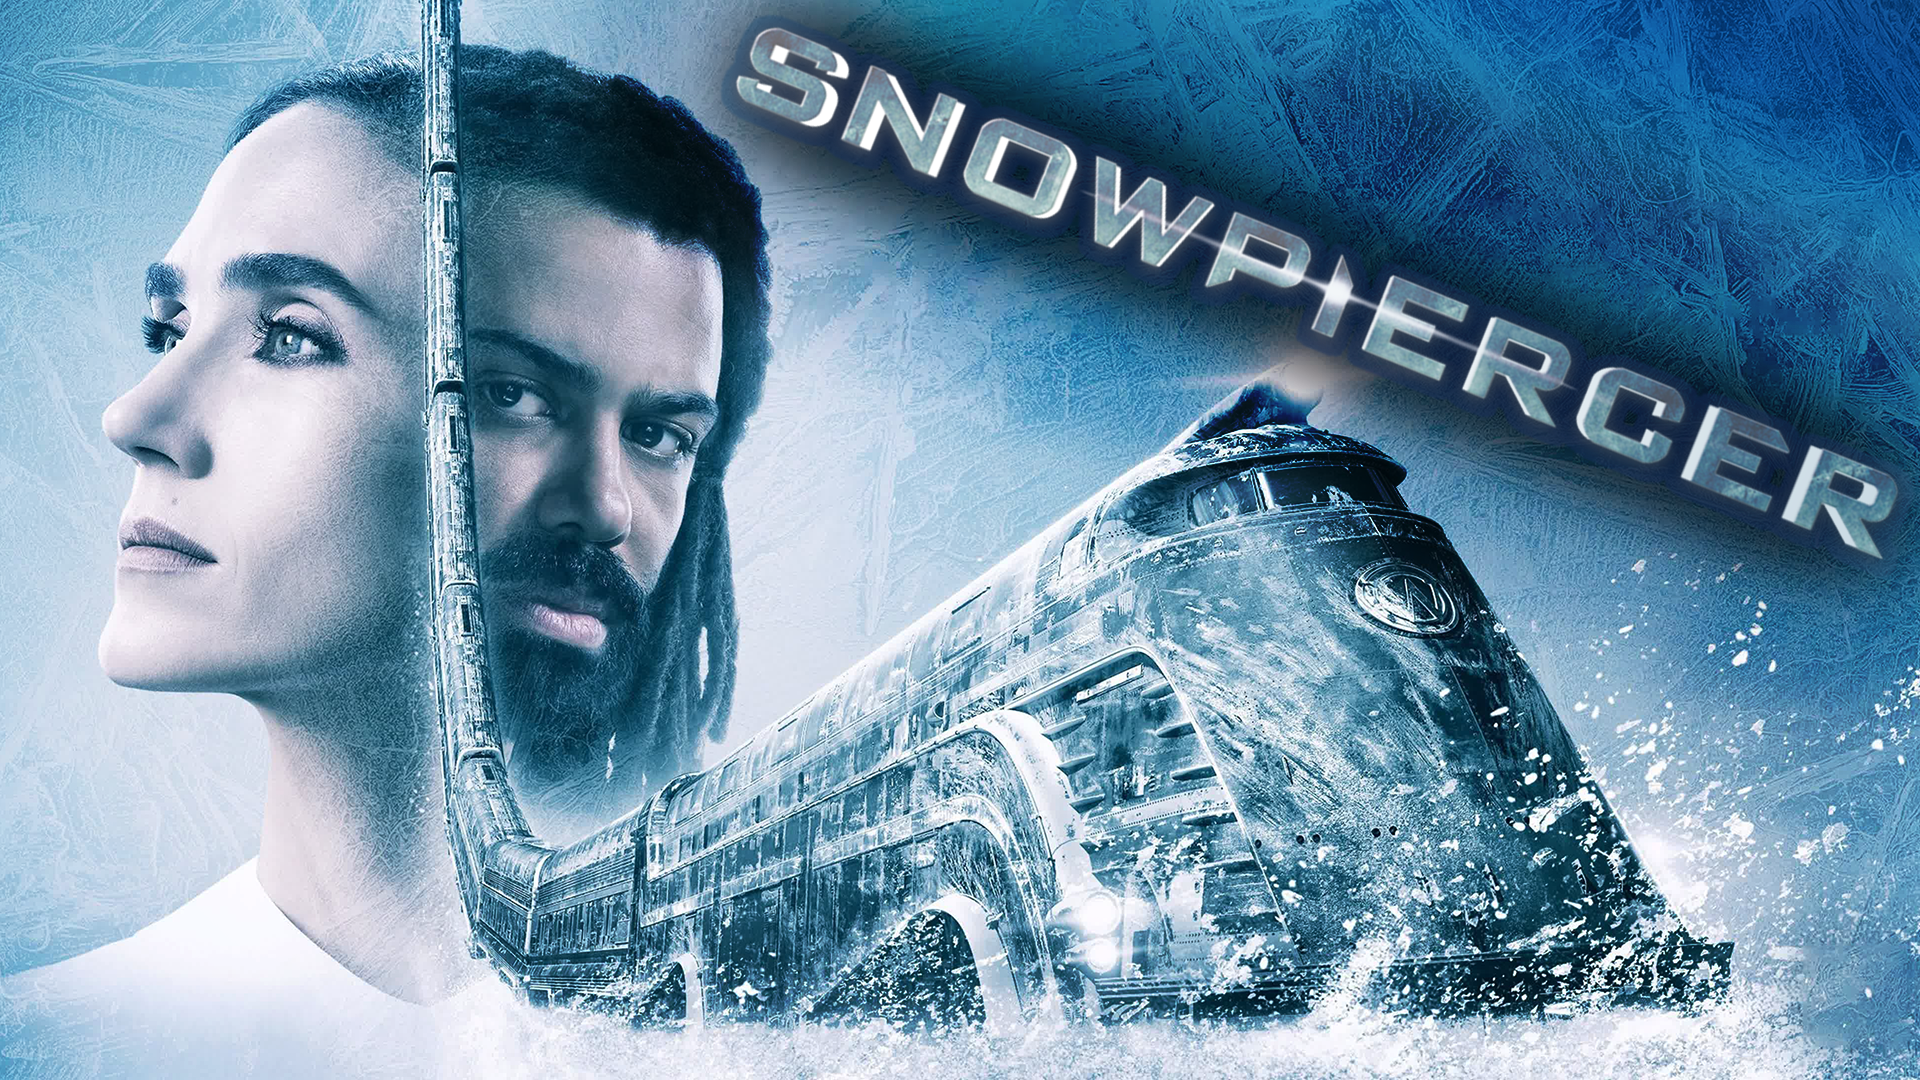 Сквозь снег – 1 сезон 5 серия / Snowpiercer